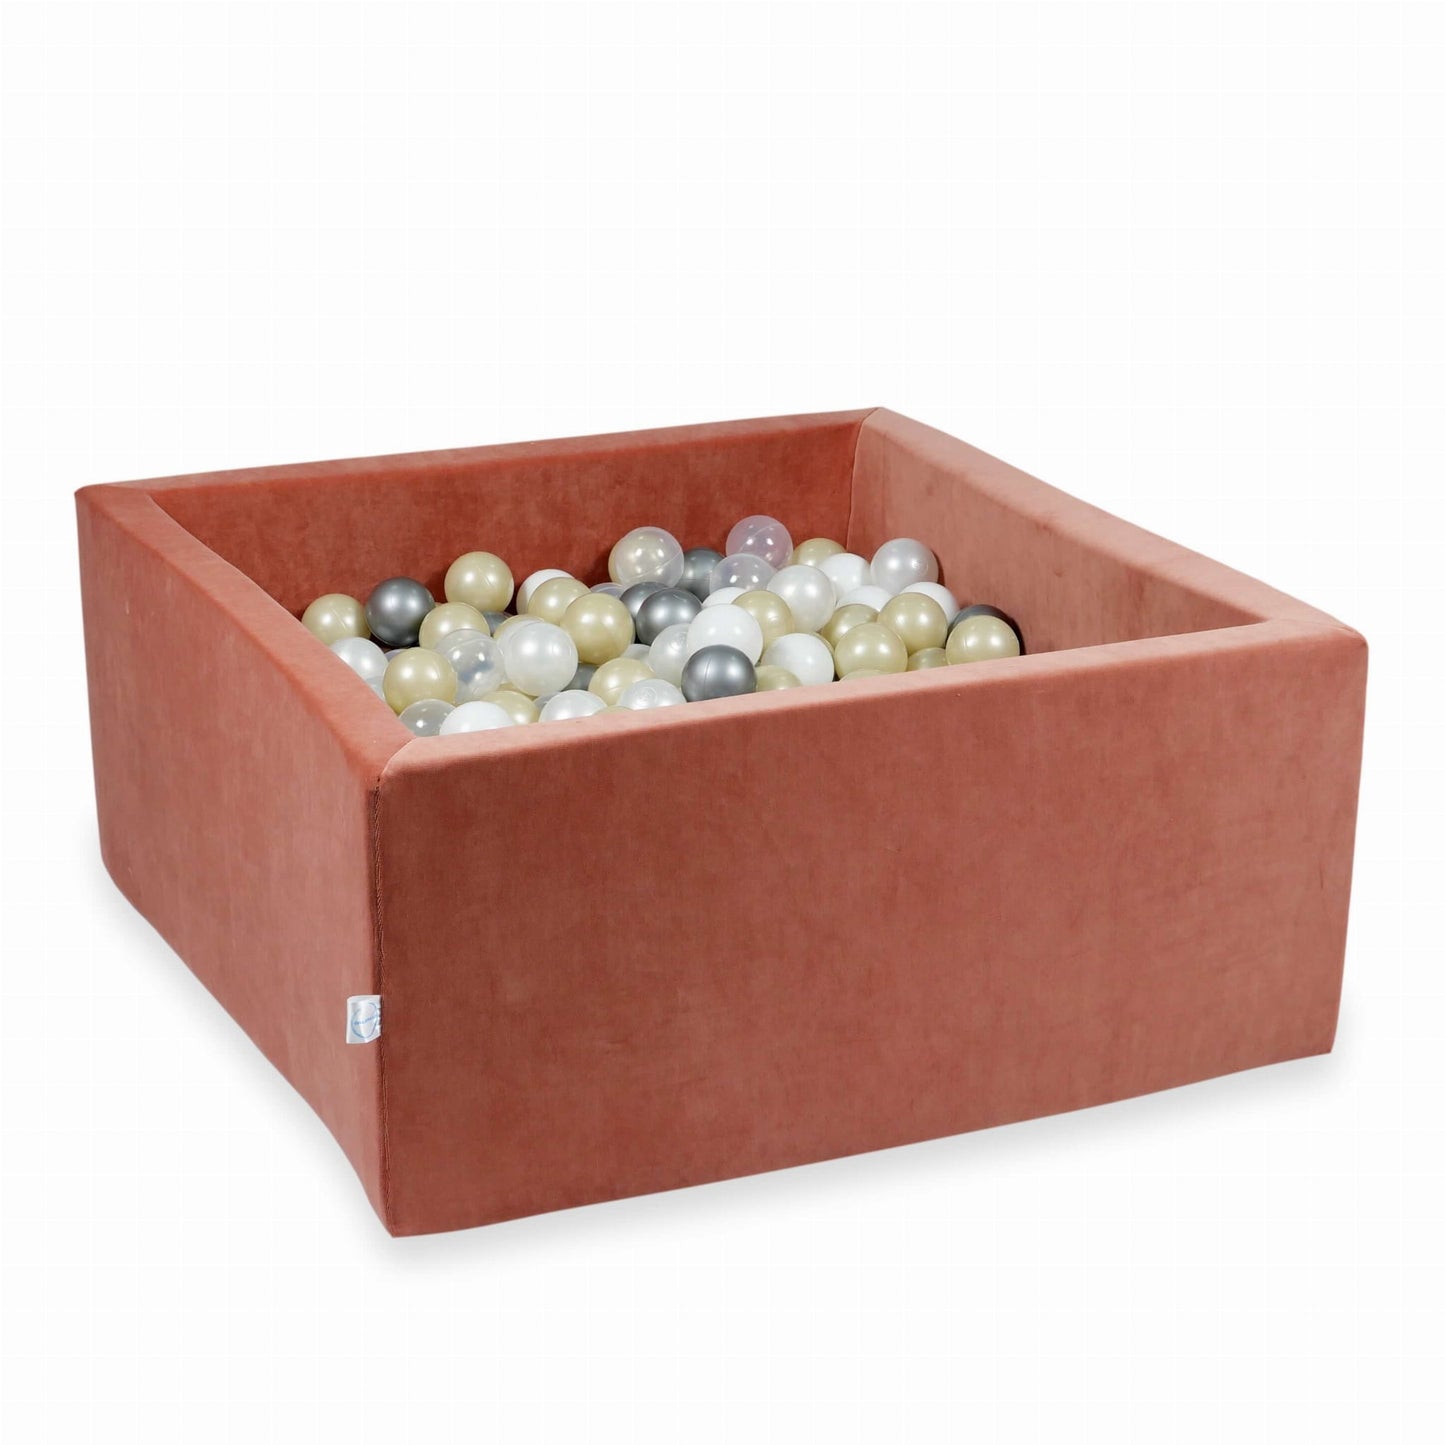 Piscine à Balles 90x90x40 Velvet Soft canyon clay avec balles 400 pcs (or rose, beige, or clair)